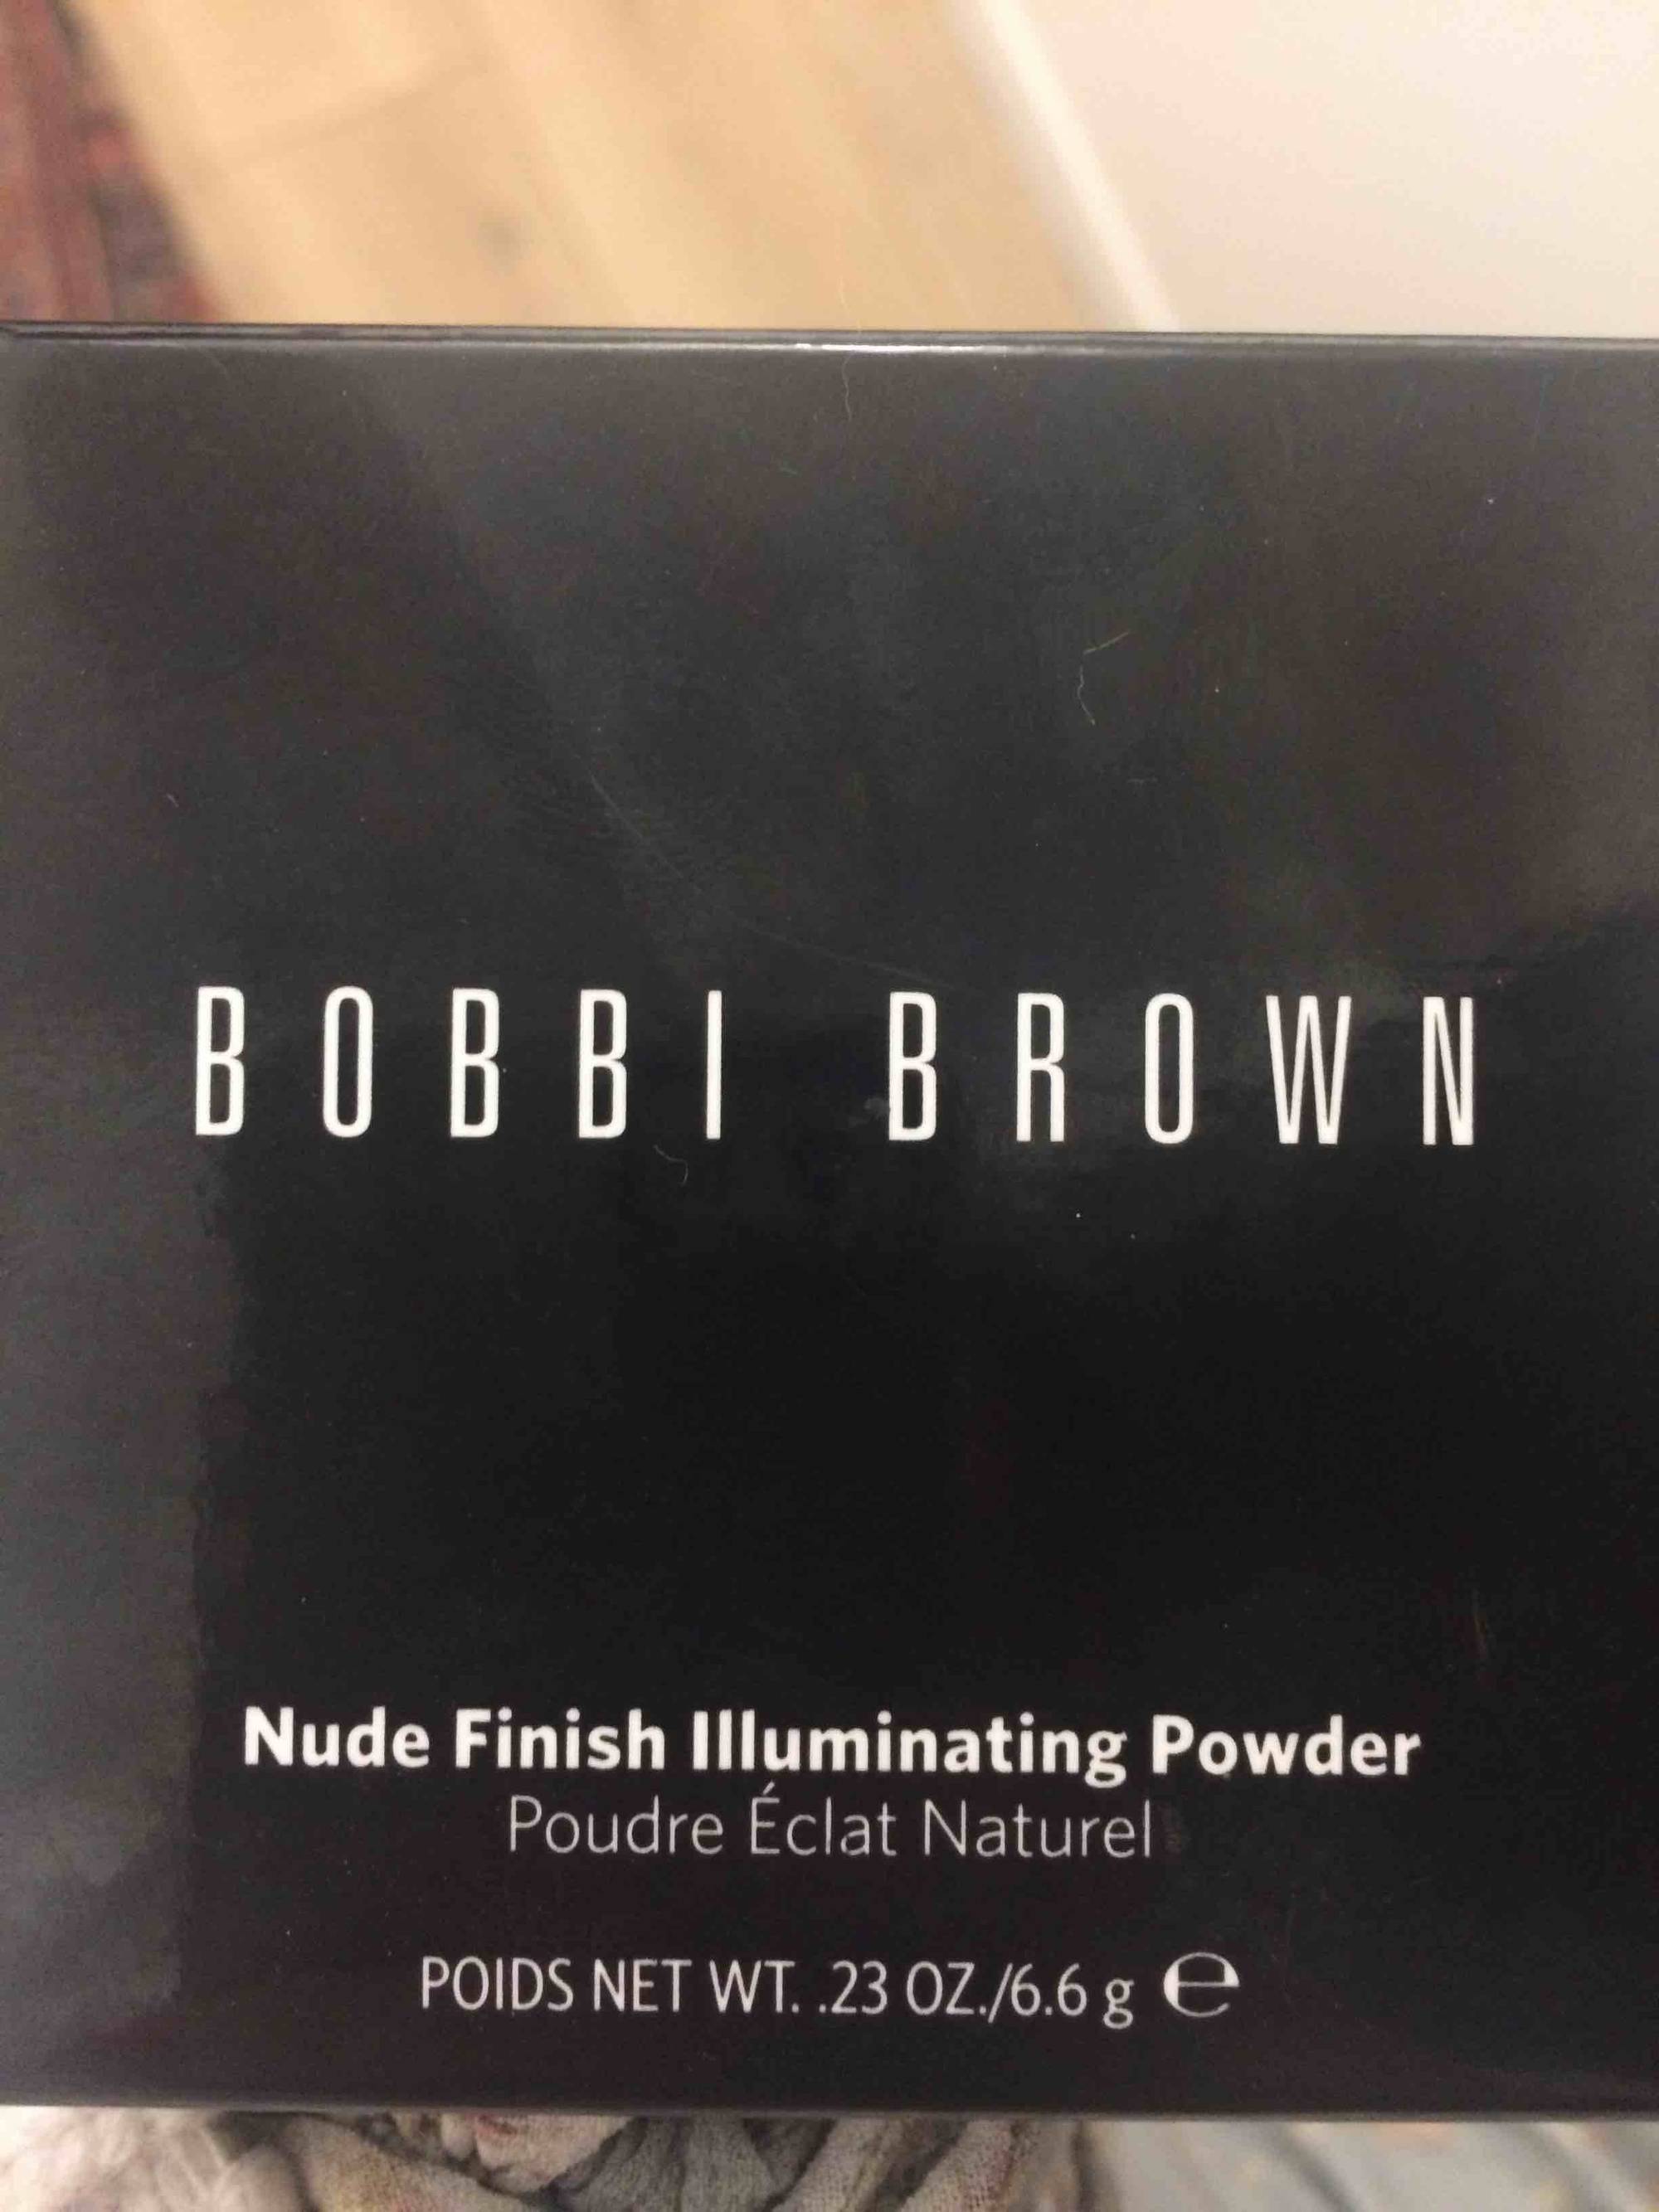 BOBBI BROWN - Nude Finish Illuminating Powder - Eclat naturel